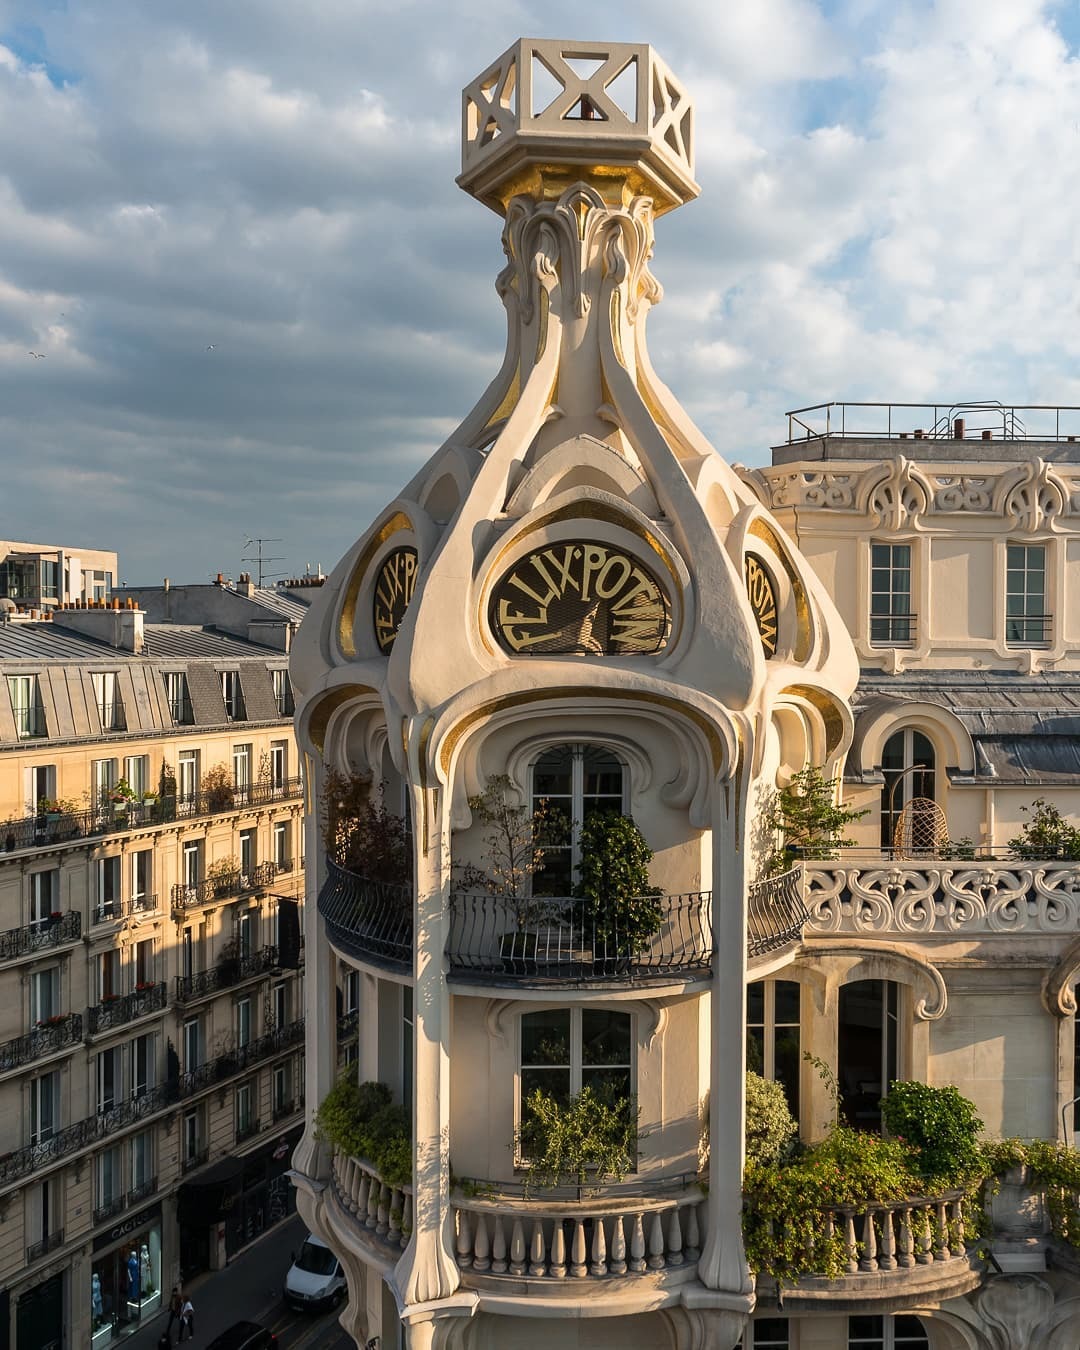 architecturealliance:
“Concrete turret of the Félix Potin building, a 1904 Art Nouveau department store with an exterior of moulded concrete casts on Rue de Rennes, 6th arrondissement of Paris, France.
”